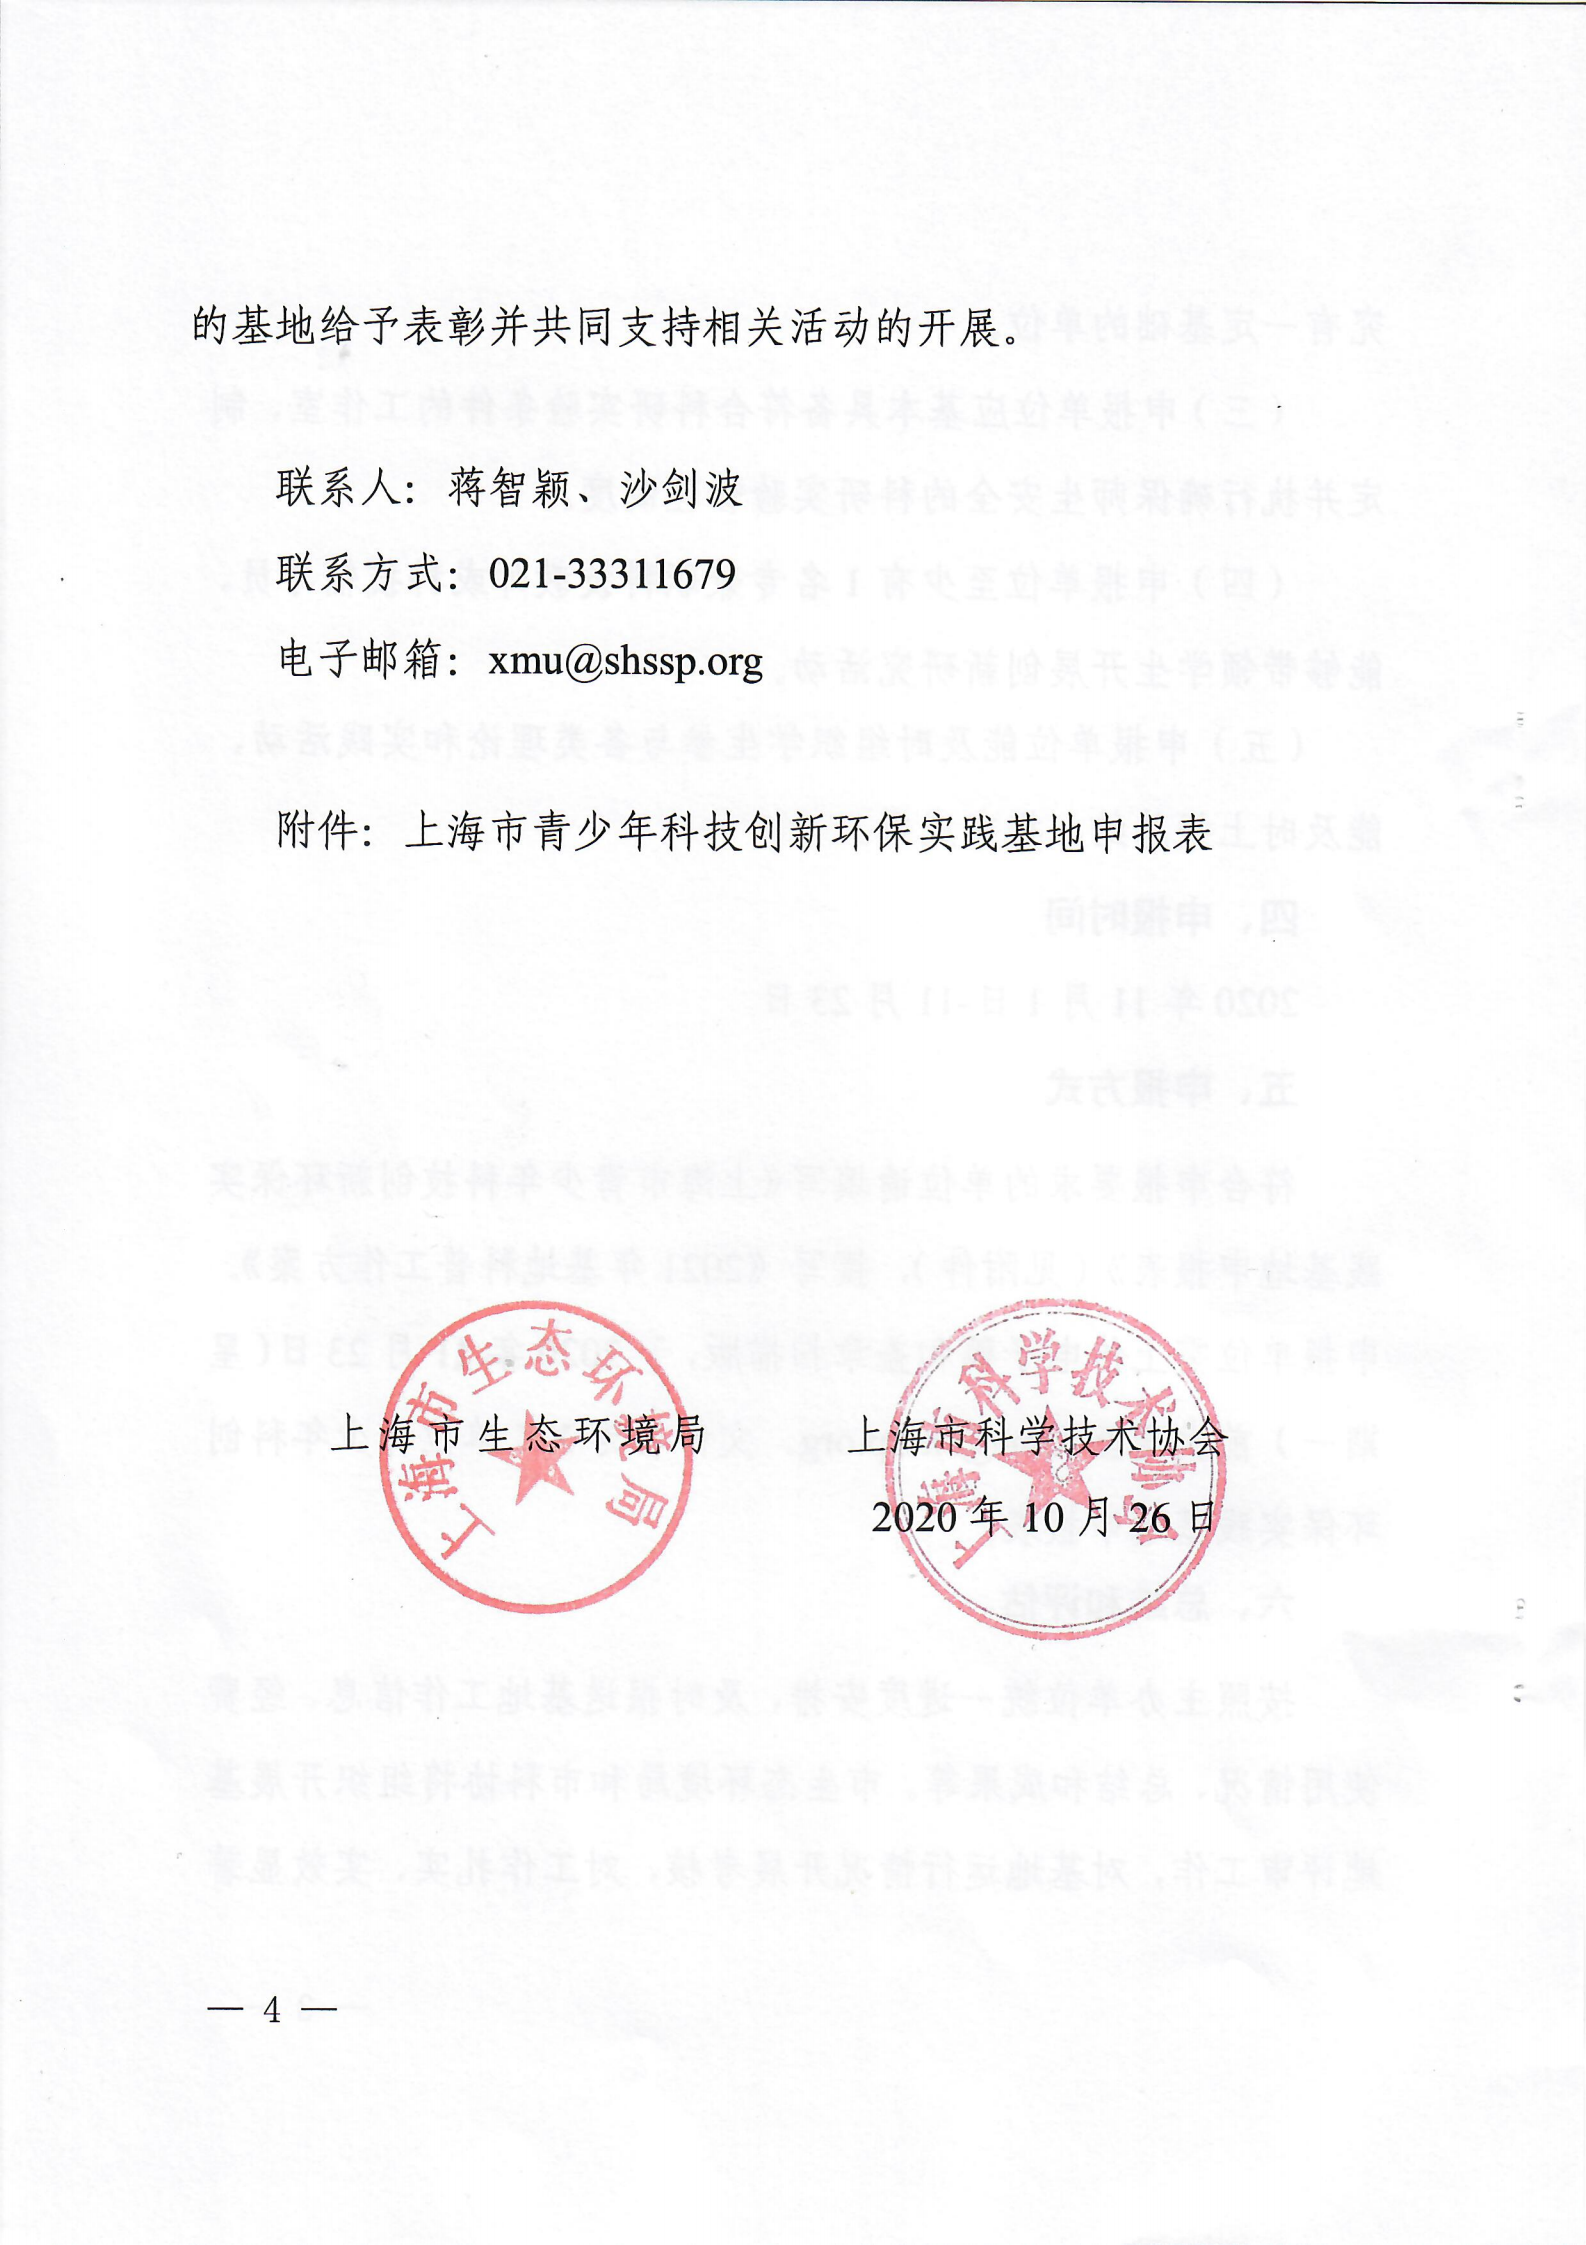 关于申报上海市青少年科技创新环保实践基地的通知扫描版_03.png